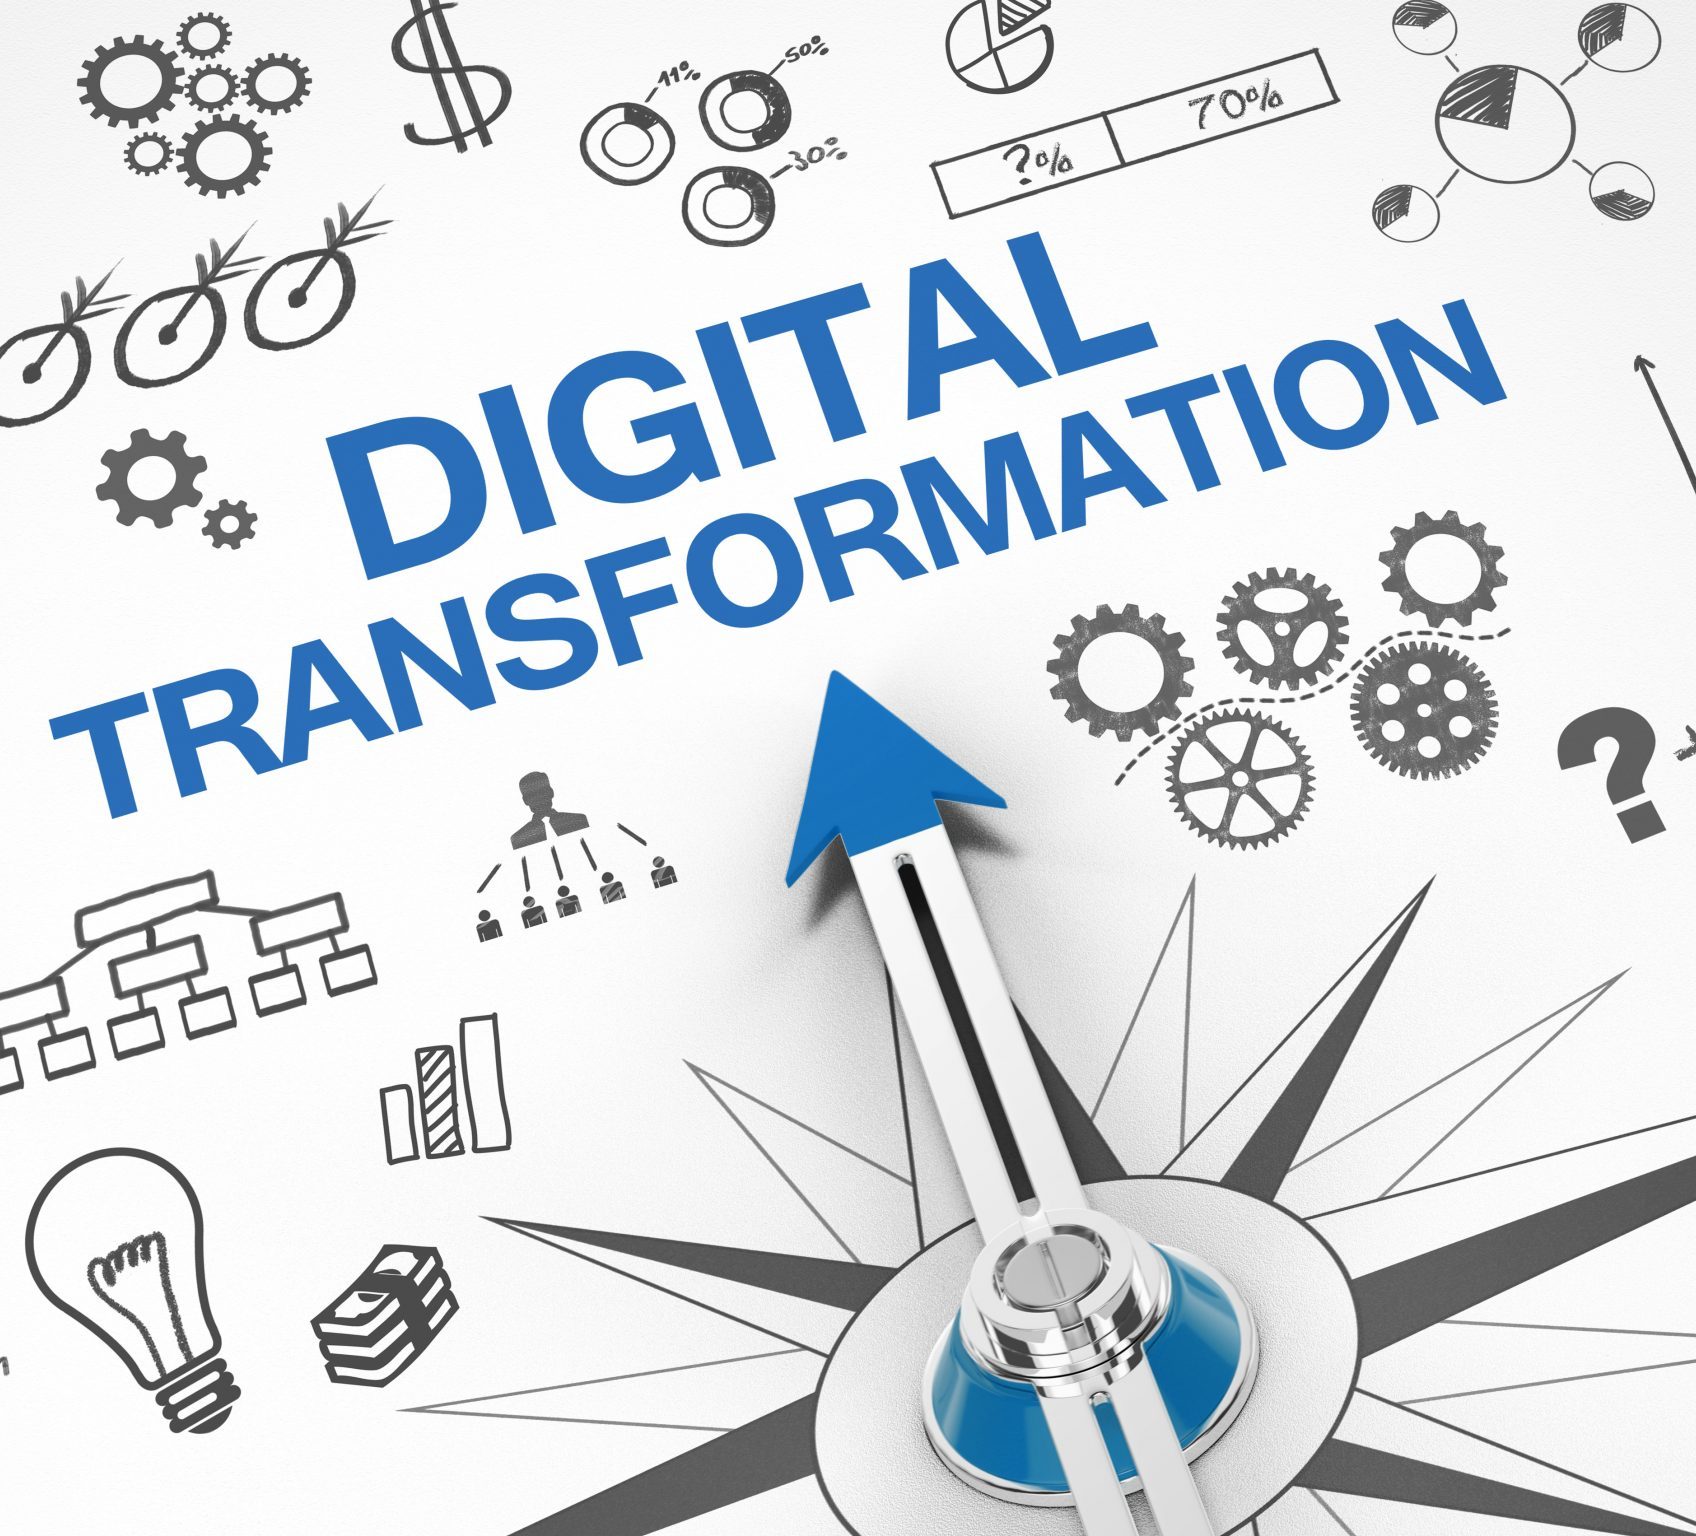 Inicie la Transformación Digital con Nosotros